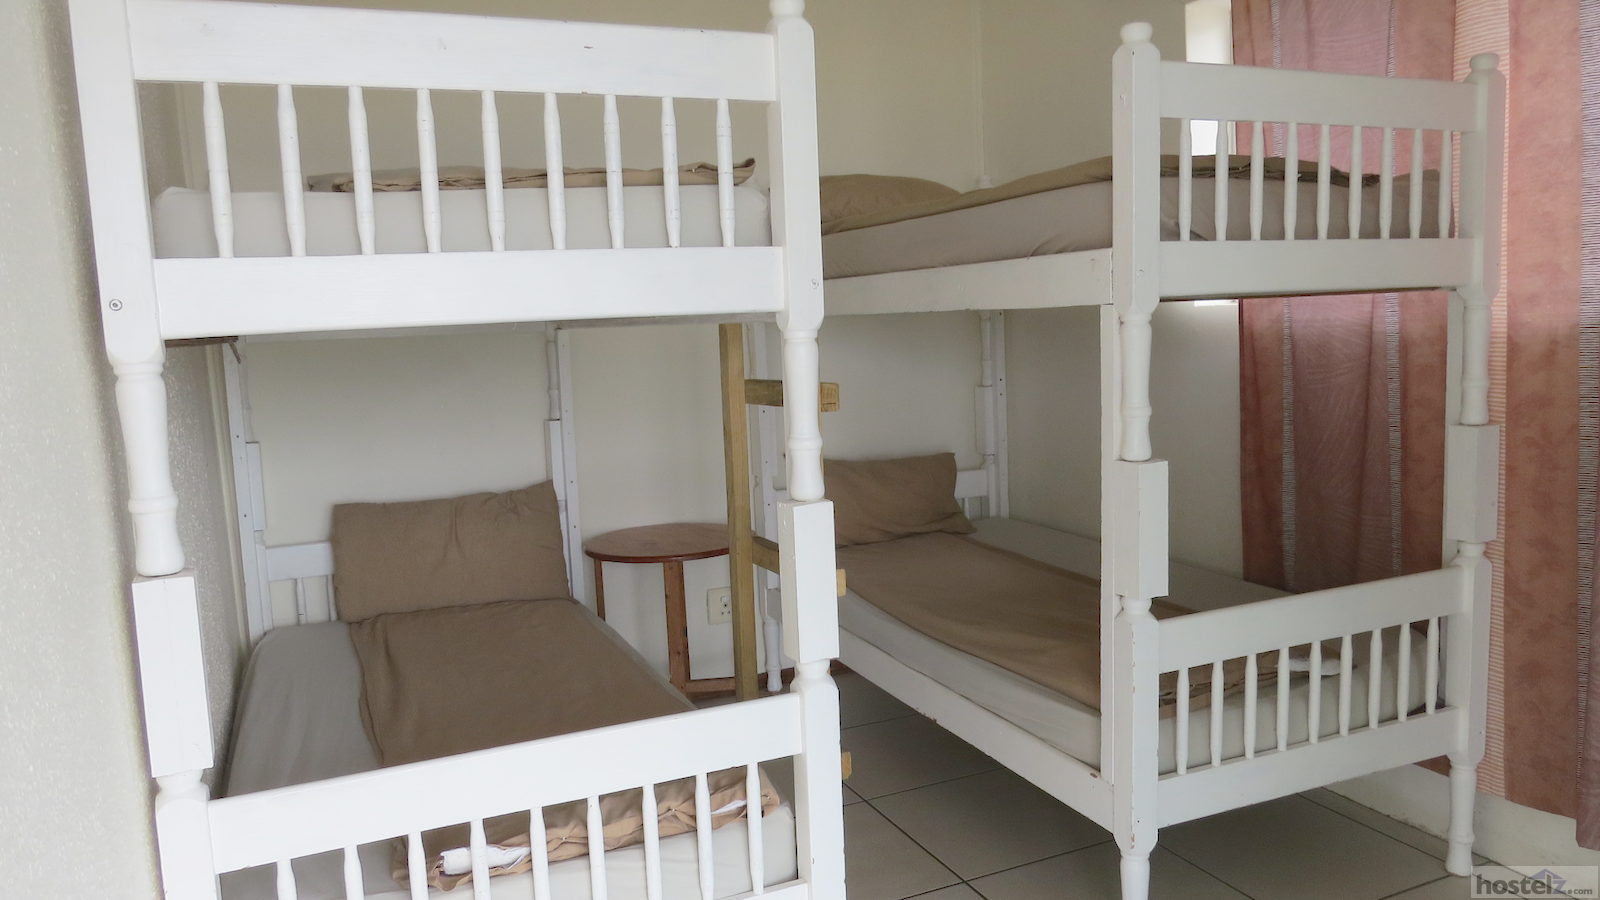 4-Bed Mixed Dorm